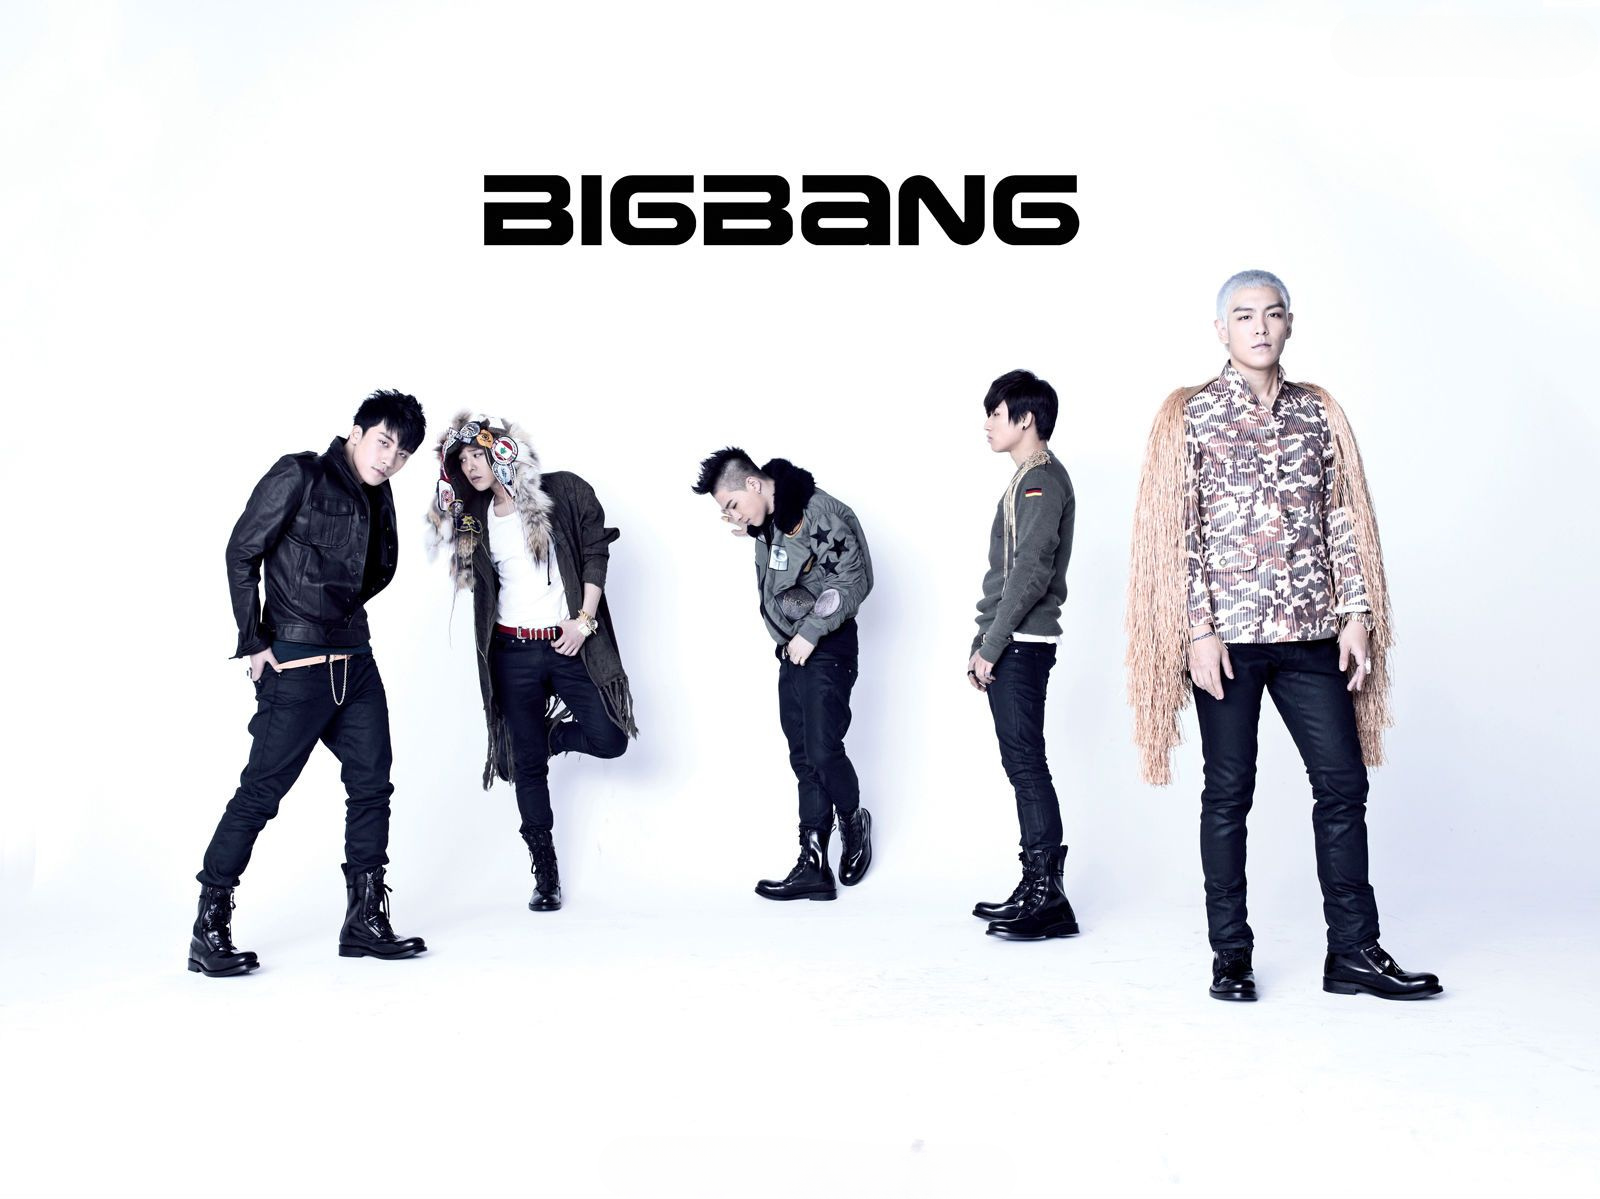 Alle5 Mitglieder Von Bigbang: G-dragon, T.o.p, Taeyang, Daesung Und Seungri